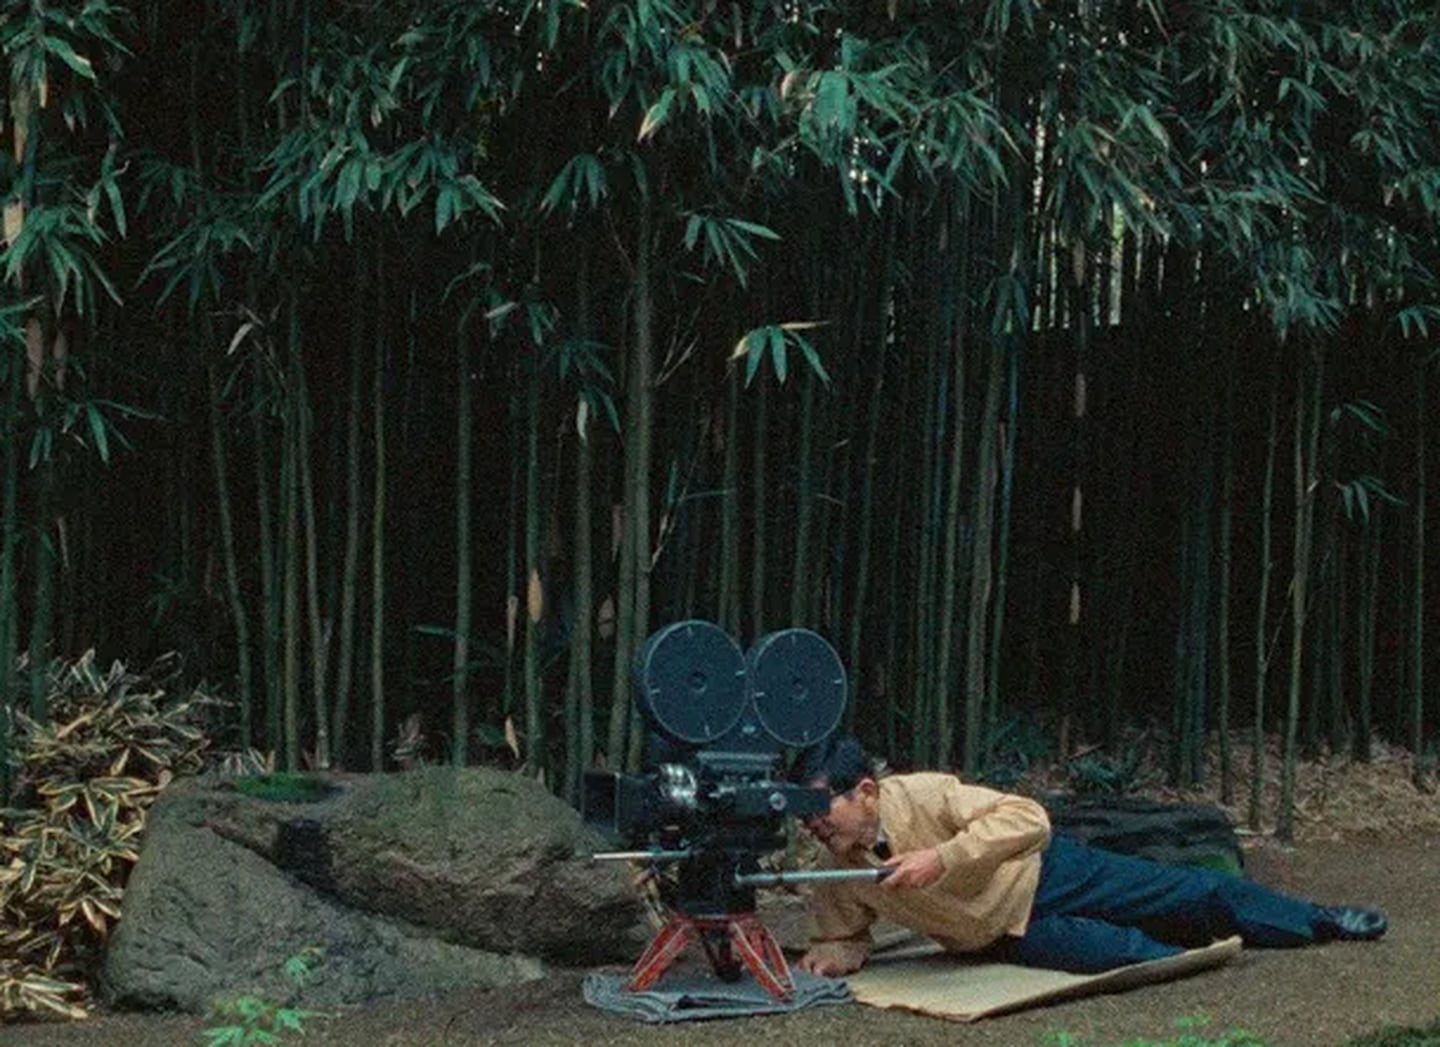 Fotograma de 'Tokyo-Ga', documental de 1985 sobre Yasujiro Ozu, dirigido por Wim Wenders, donde el alemán contrasta la belleza trascendental de las películas de Ozu con el frenético Japón moderno.